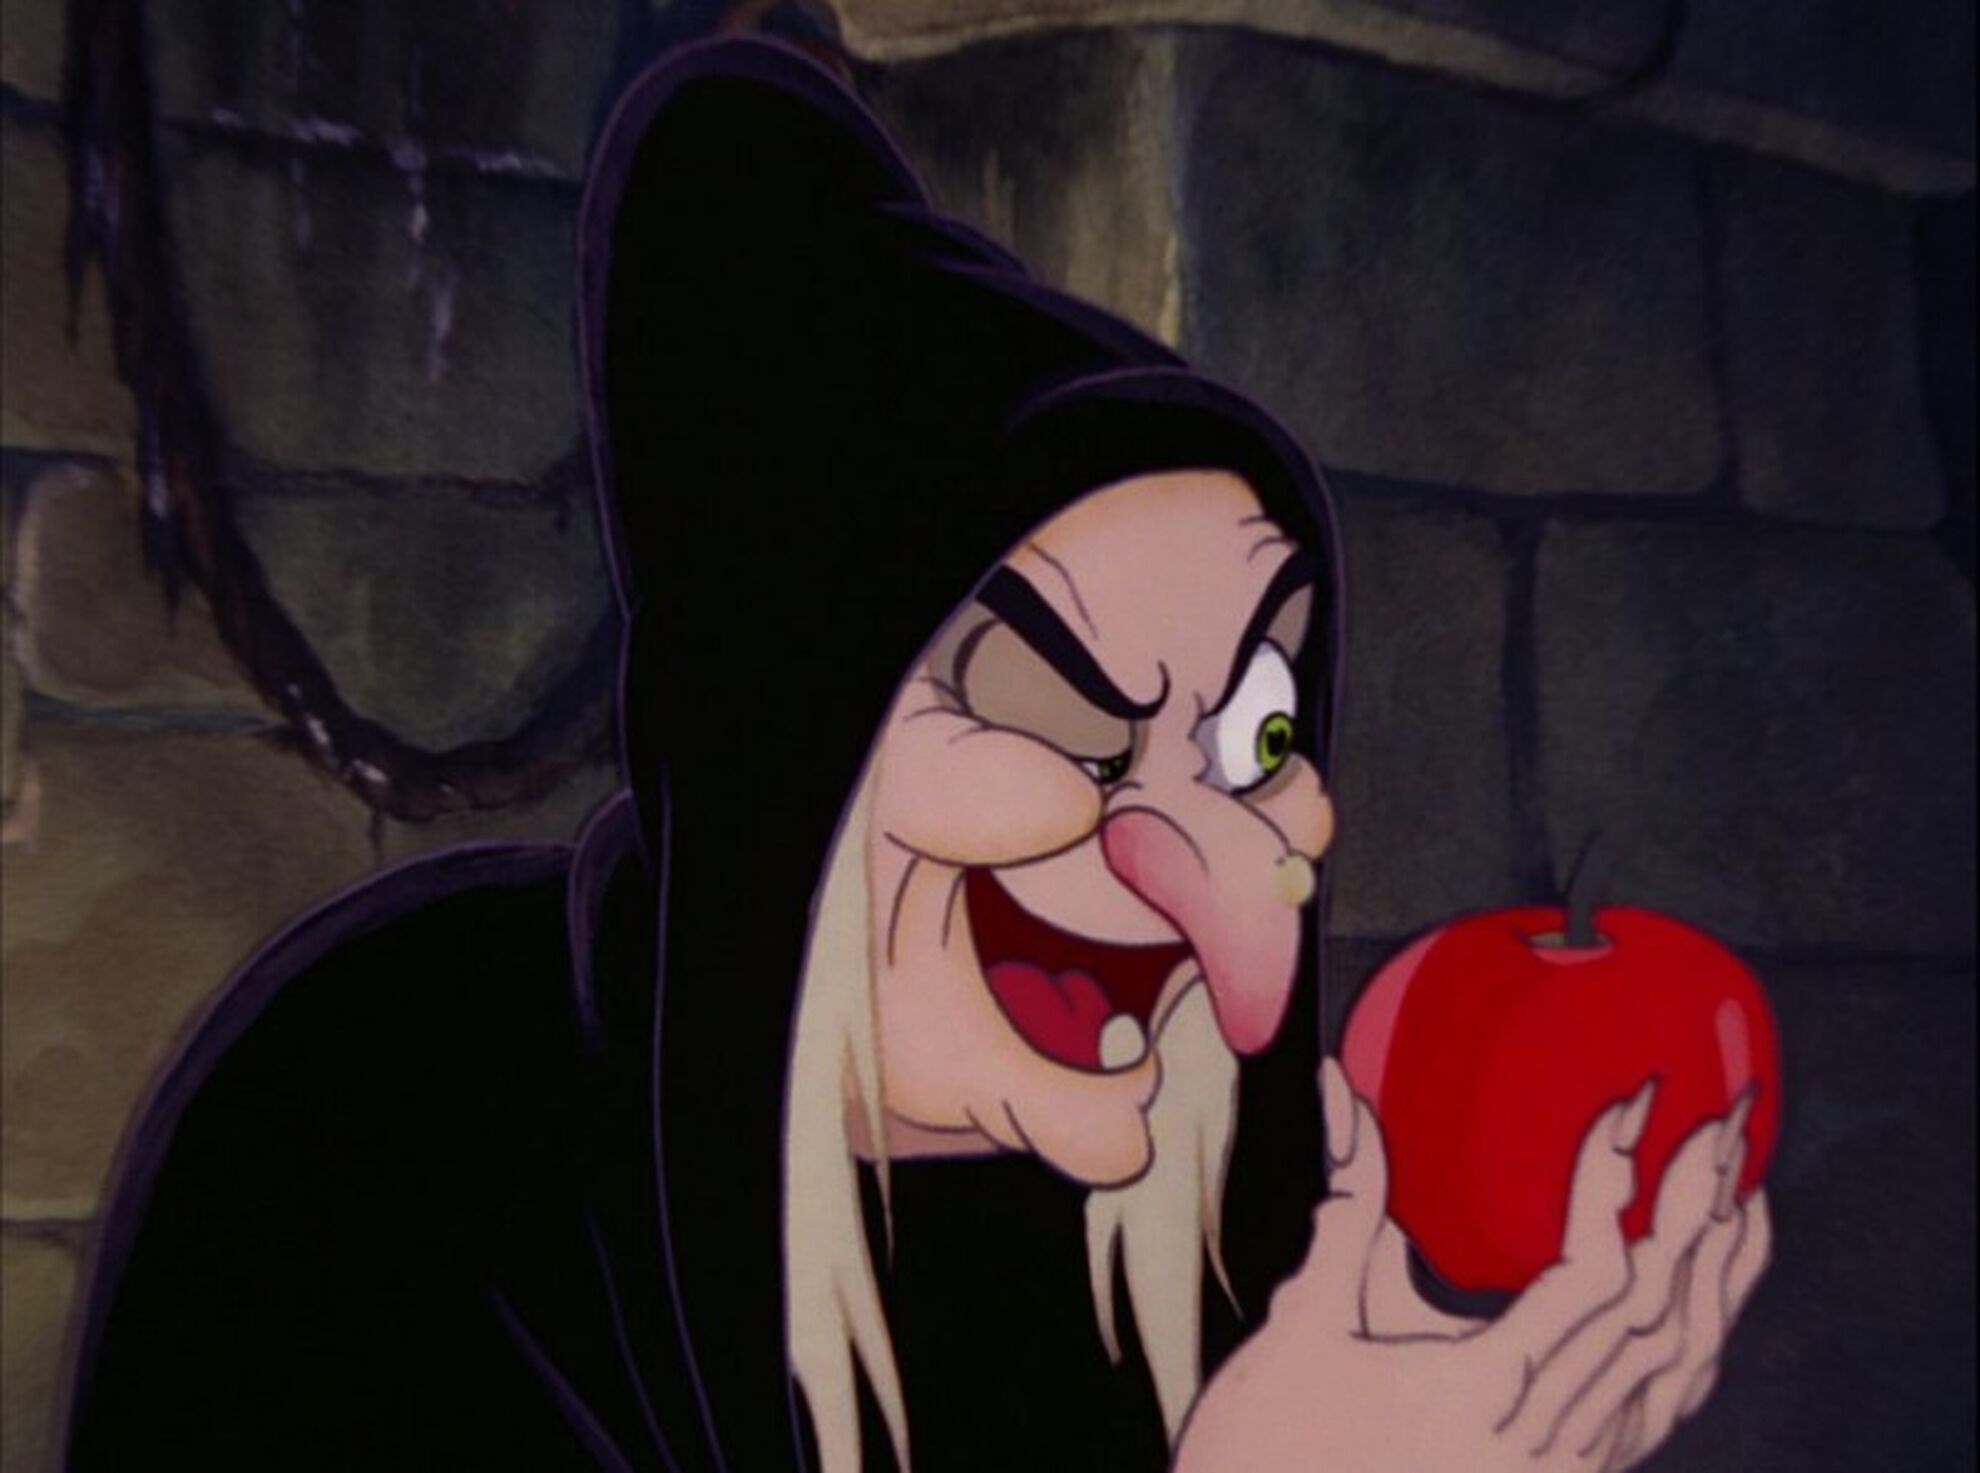 la strega porge la sua mela avvelenata in una scena del film d animazione biancaneve e i sette nani 1937 142656 jpg 1100x0 crop q85